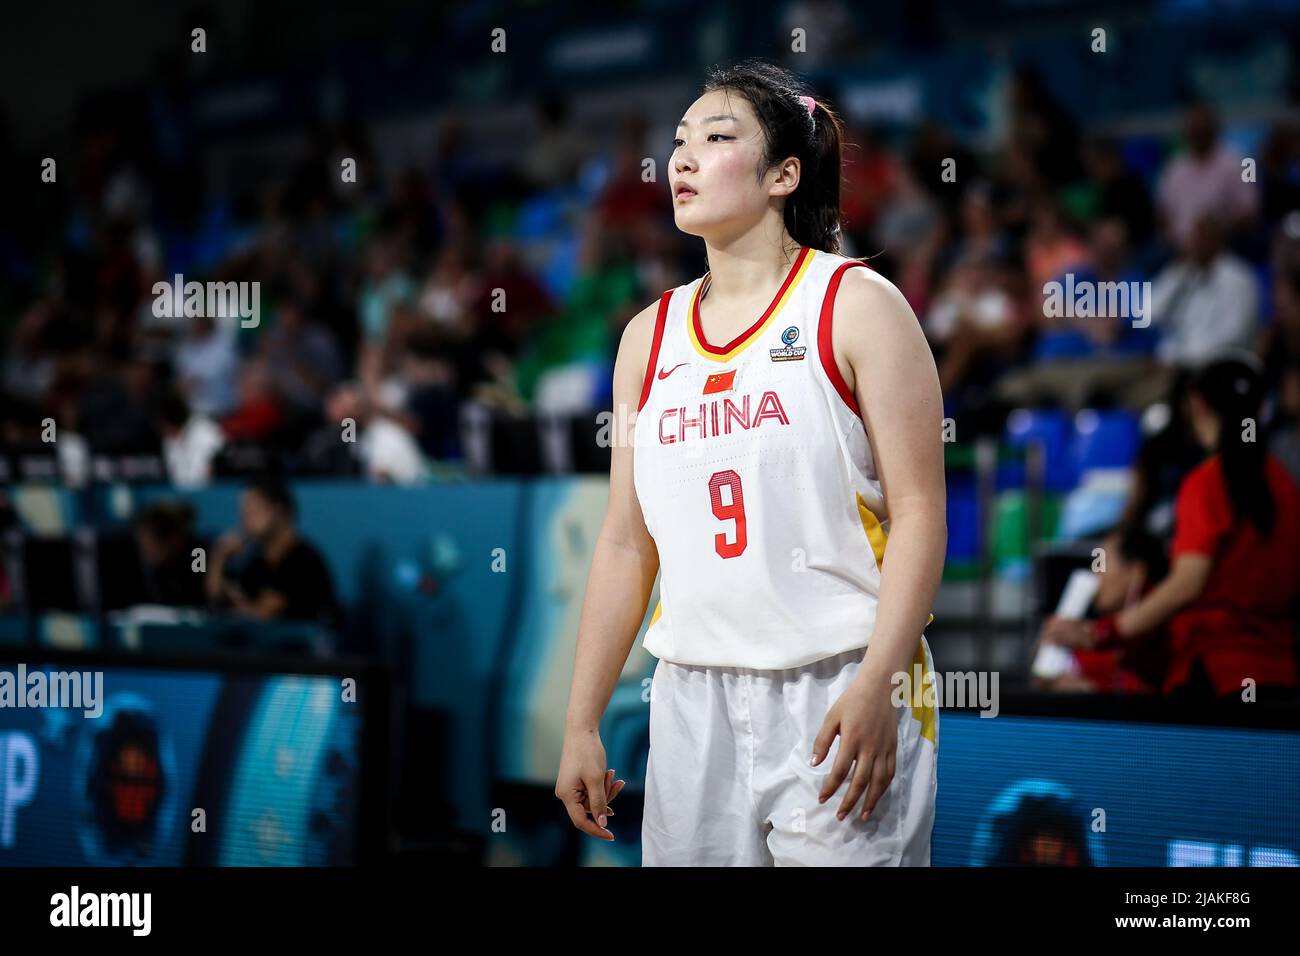 Spanien, Teneriffa, 26. September 2018: Die chinesische Basketballspielerin Li Meng während der Basketball-Weltmeisterschaft der Frauen in Spanien. Stockfoto